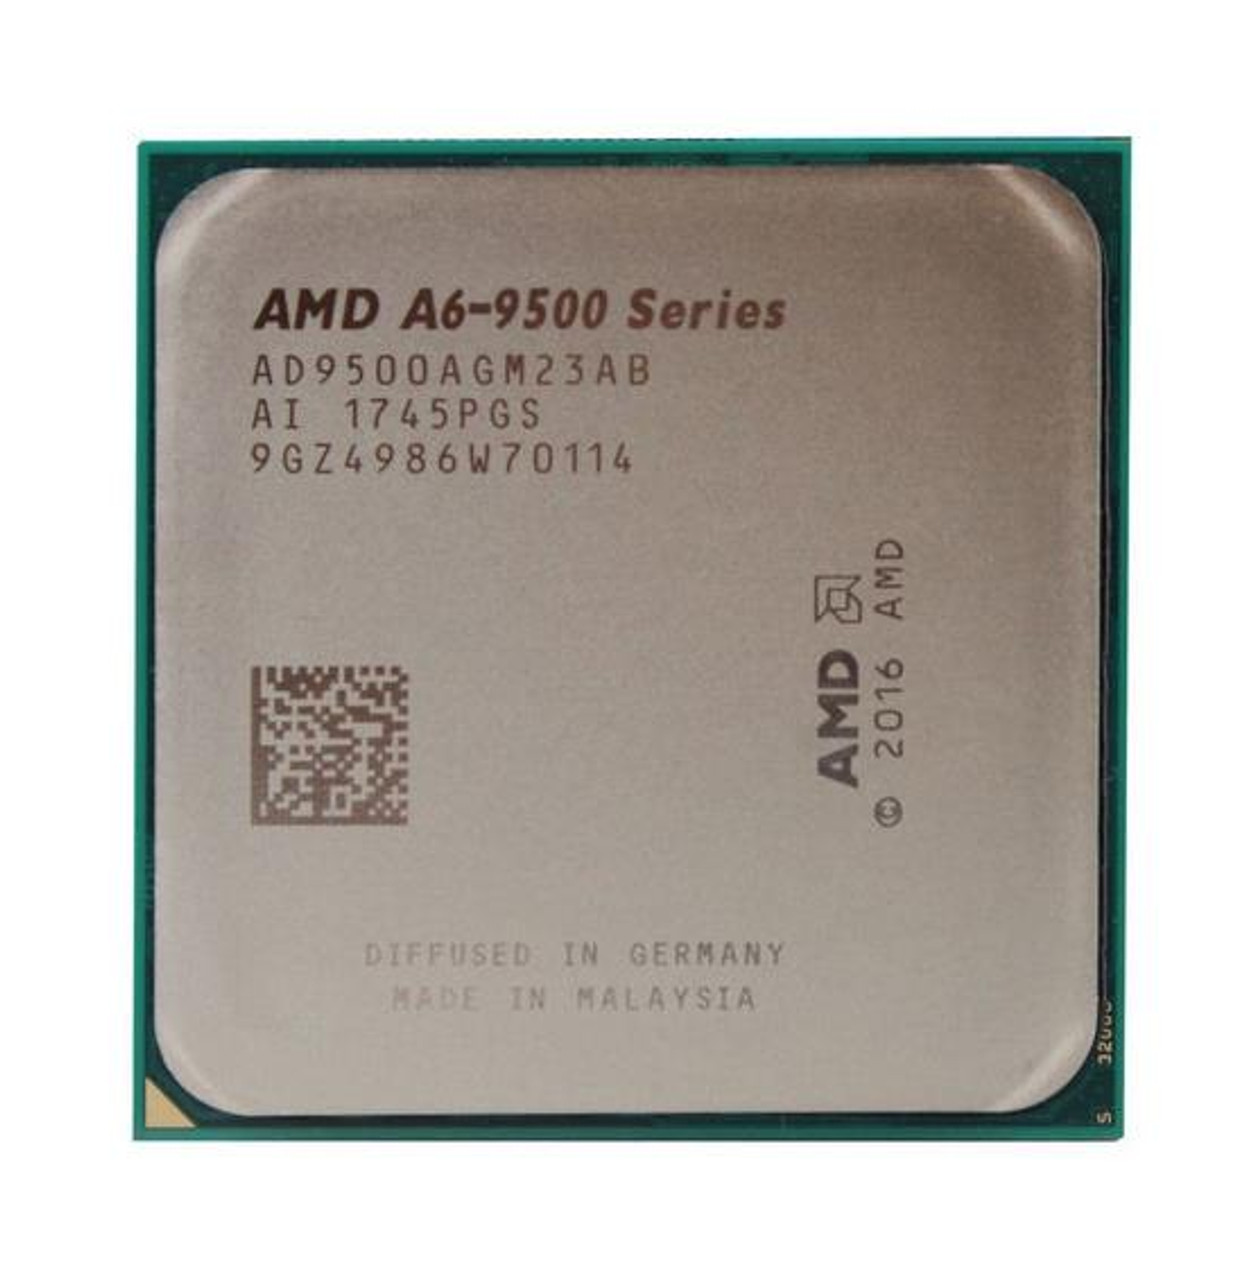 HP 3.50GHz 1MB L2 Cache Socket AM4 AMD A6-9500 Dual-Core Desktop Processor Upgrade